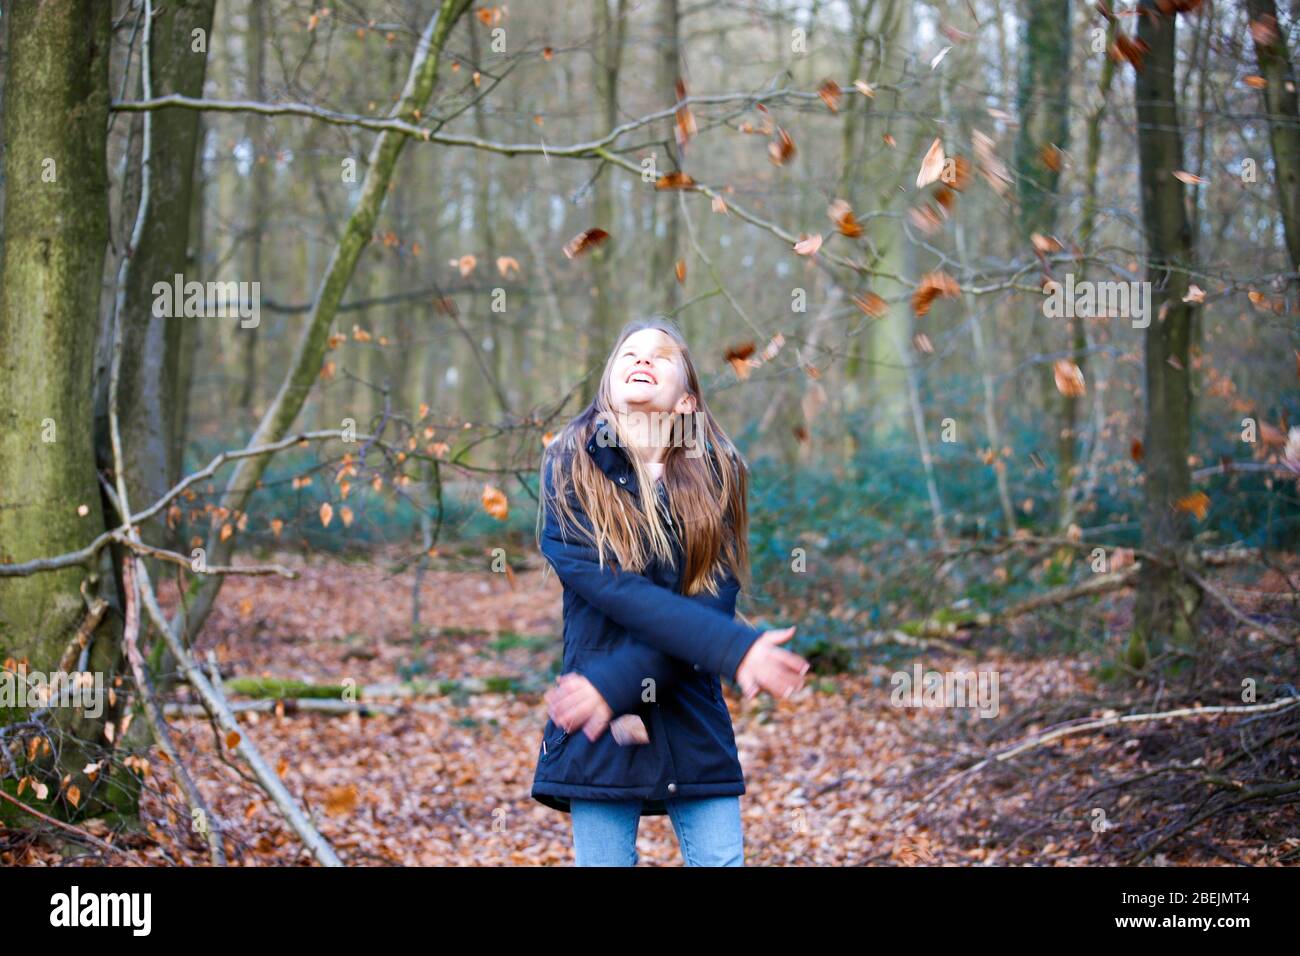 una niña se encuentra en el bosque y lanza hojas al aire Foto de stock